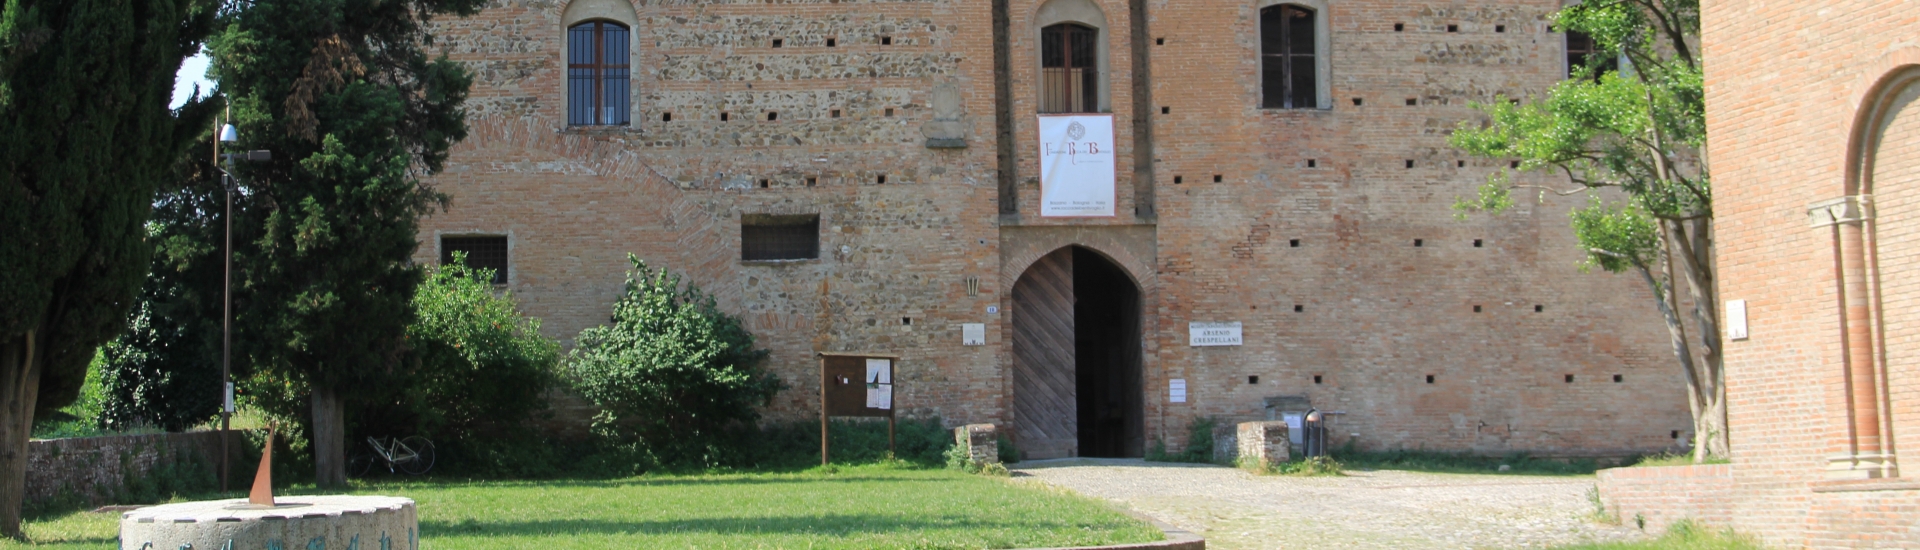 Rocca dei Bentivoglio - Bentivoglio's Fortress photo credits: |Veronica Scandellari| - Veronica Scandellari